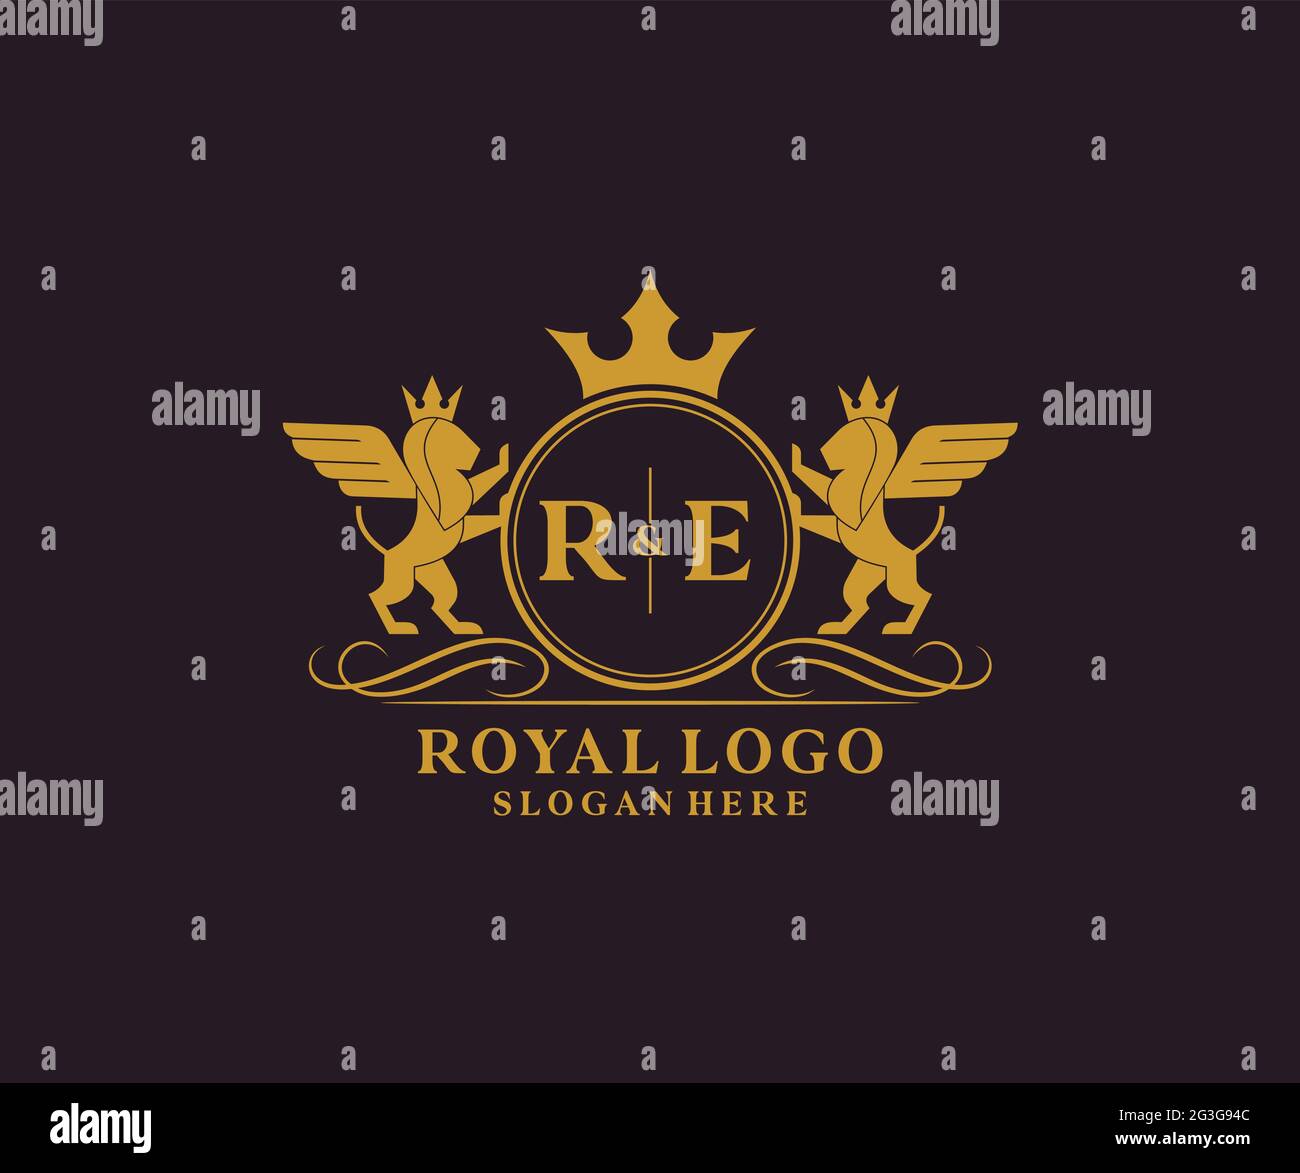 RE Buchstabe Lion Royal Luxury heraldic, Crest Logo Vorlage in Vektorgrafik für Restaurant, Royalty, Boutique, Cafe, Hotel, Heraldik, Schmuck, Mode und Stock Vektor